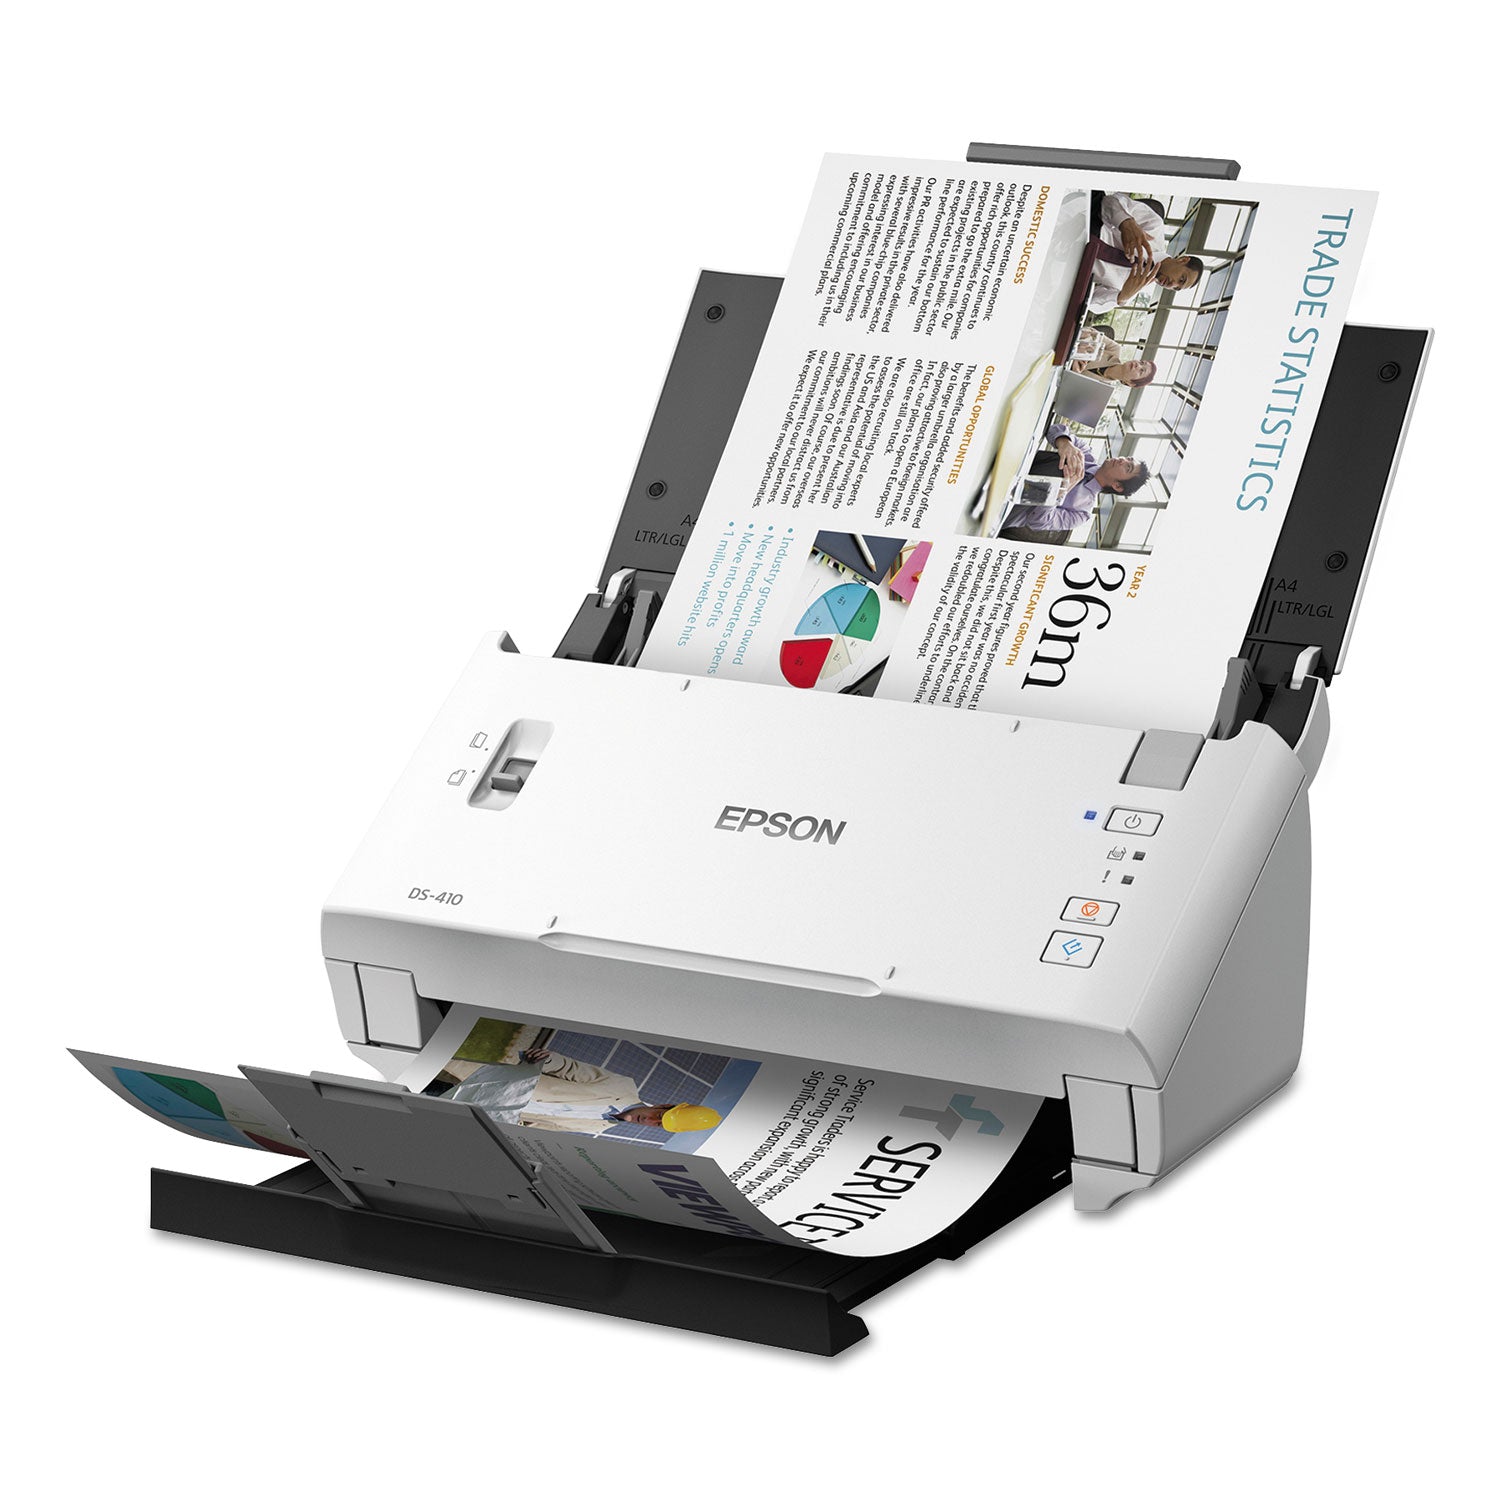 ds-410-document-scanner-600-dpi-optical-resolution-50-sheet-duplex-auto-document-feeder_epsb11b249201 - 5